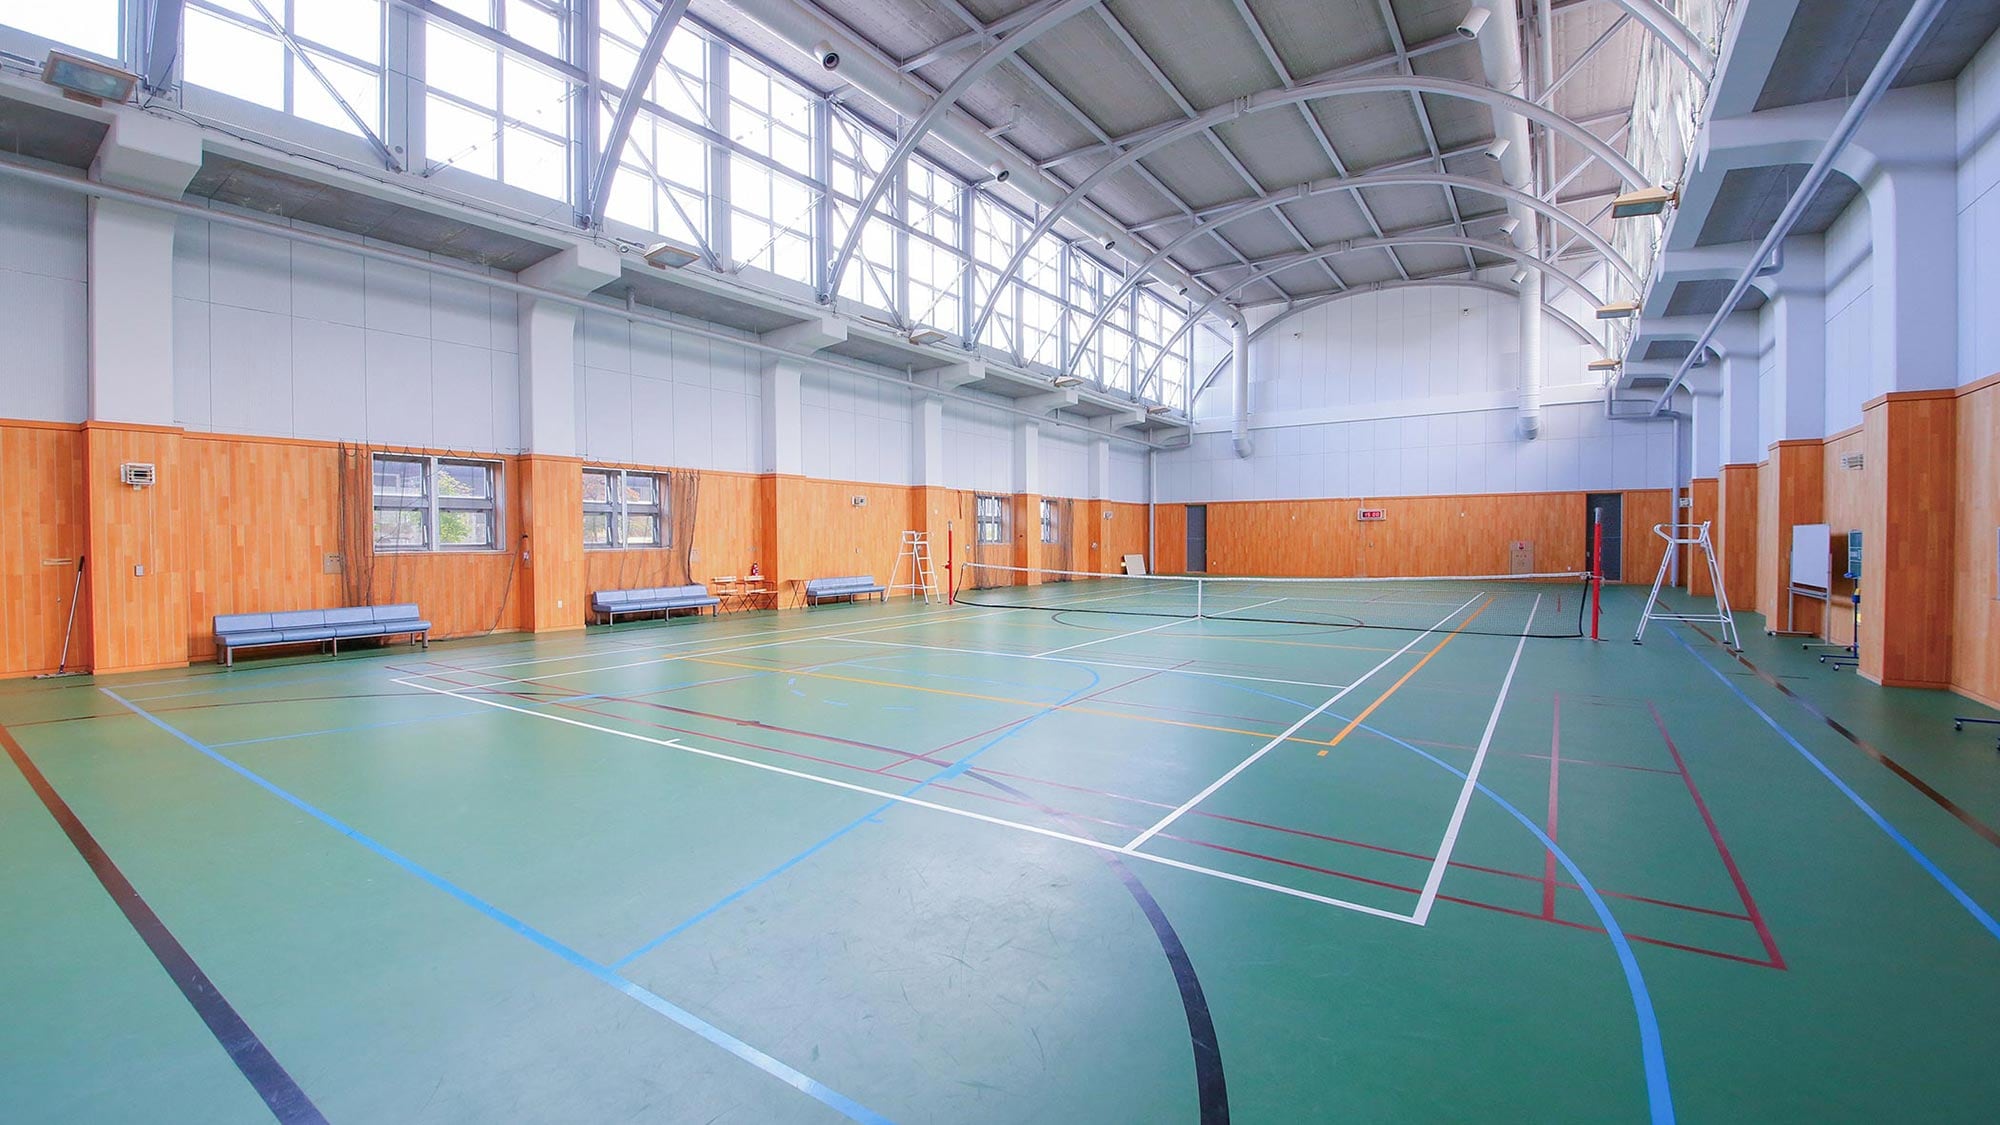 有一个室内免费网球场和篮球场。每小时1,000日元（不含税）即可使用。